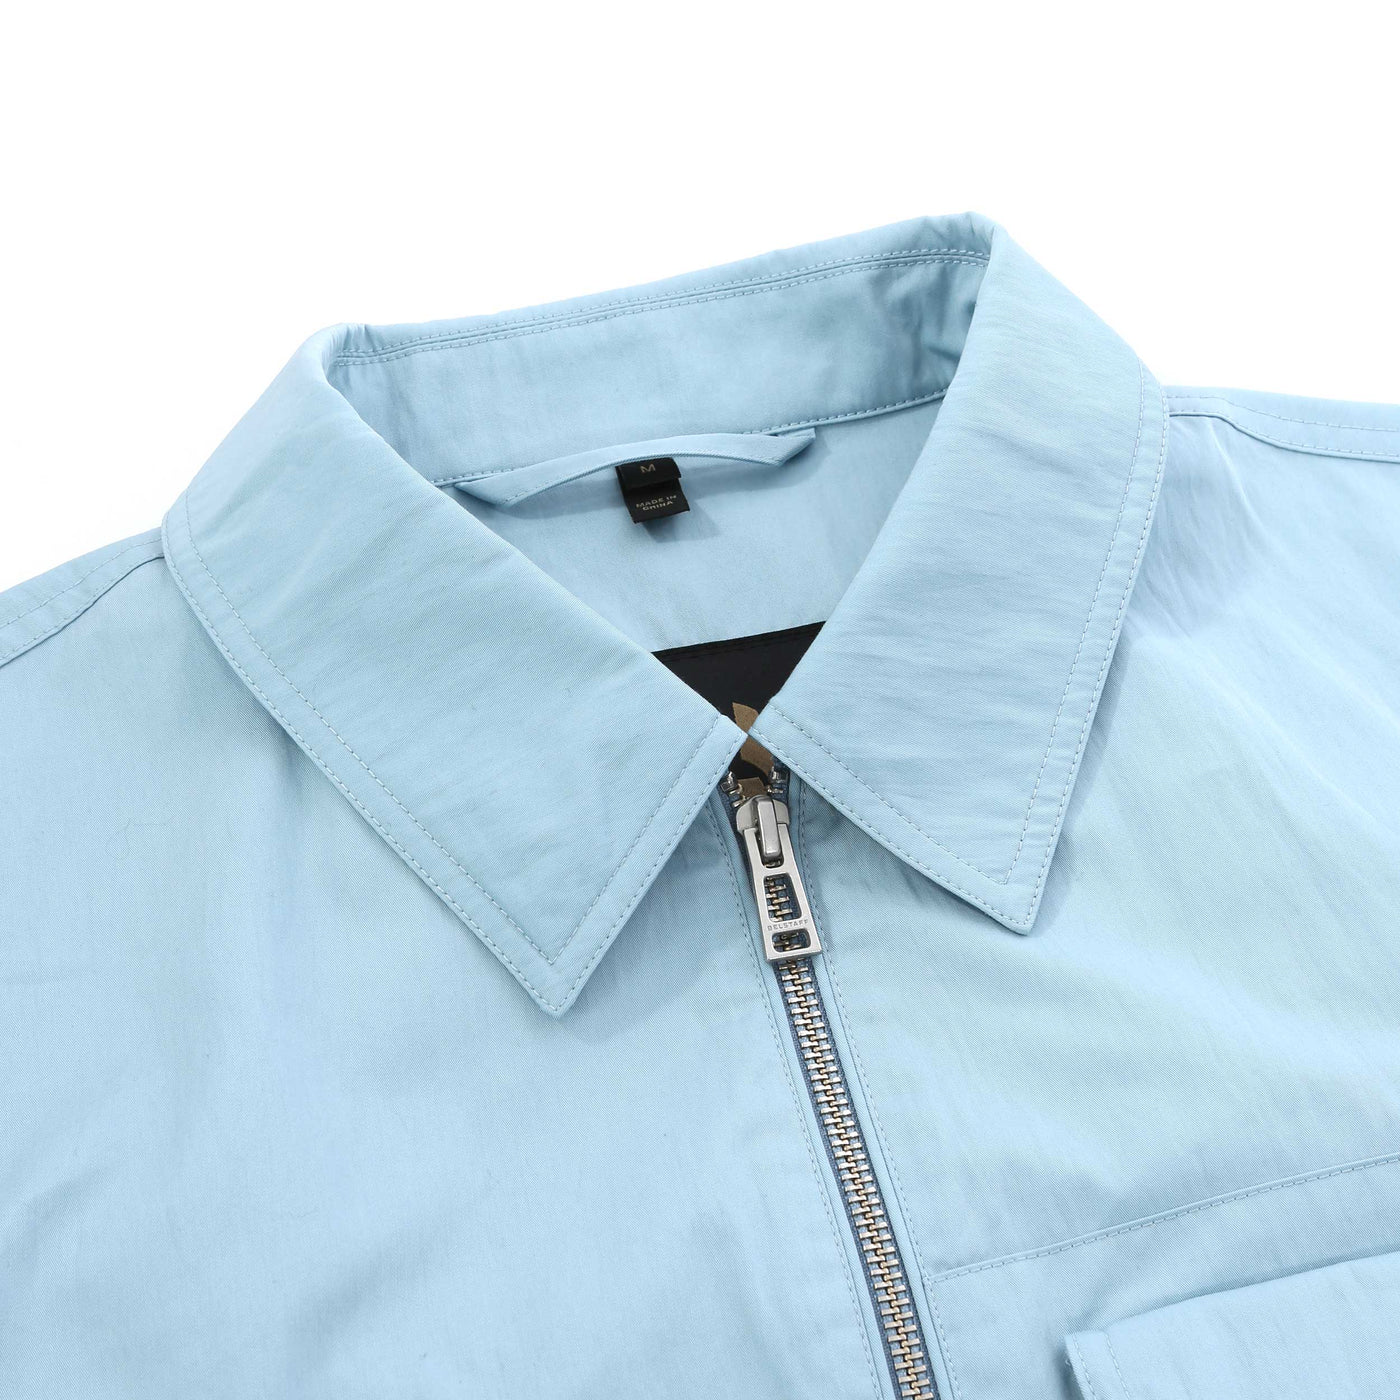 Belstaff Runner Overshirt in Skyline Blue Collar